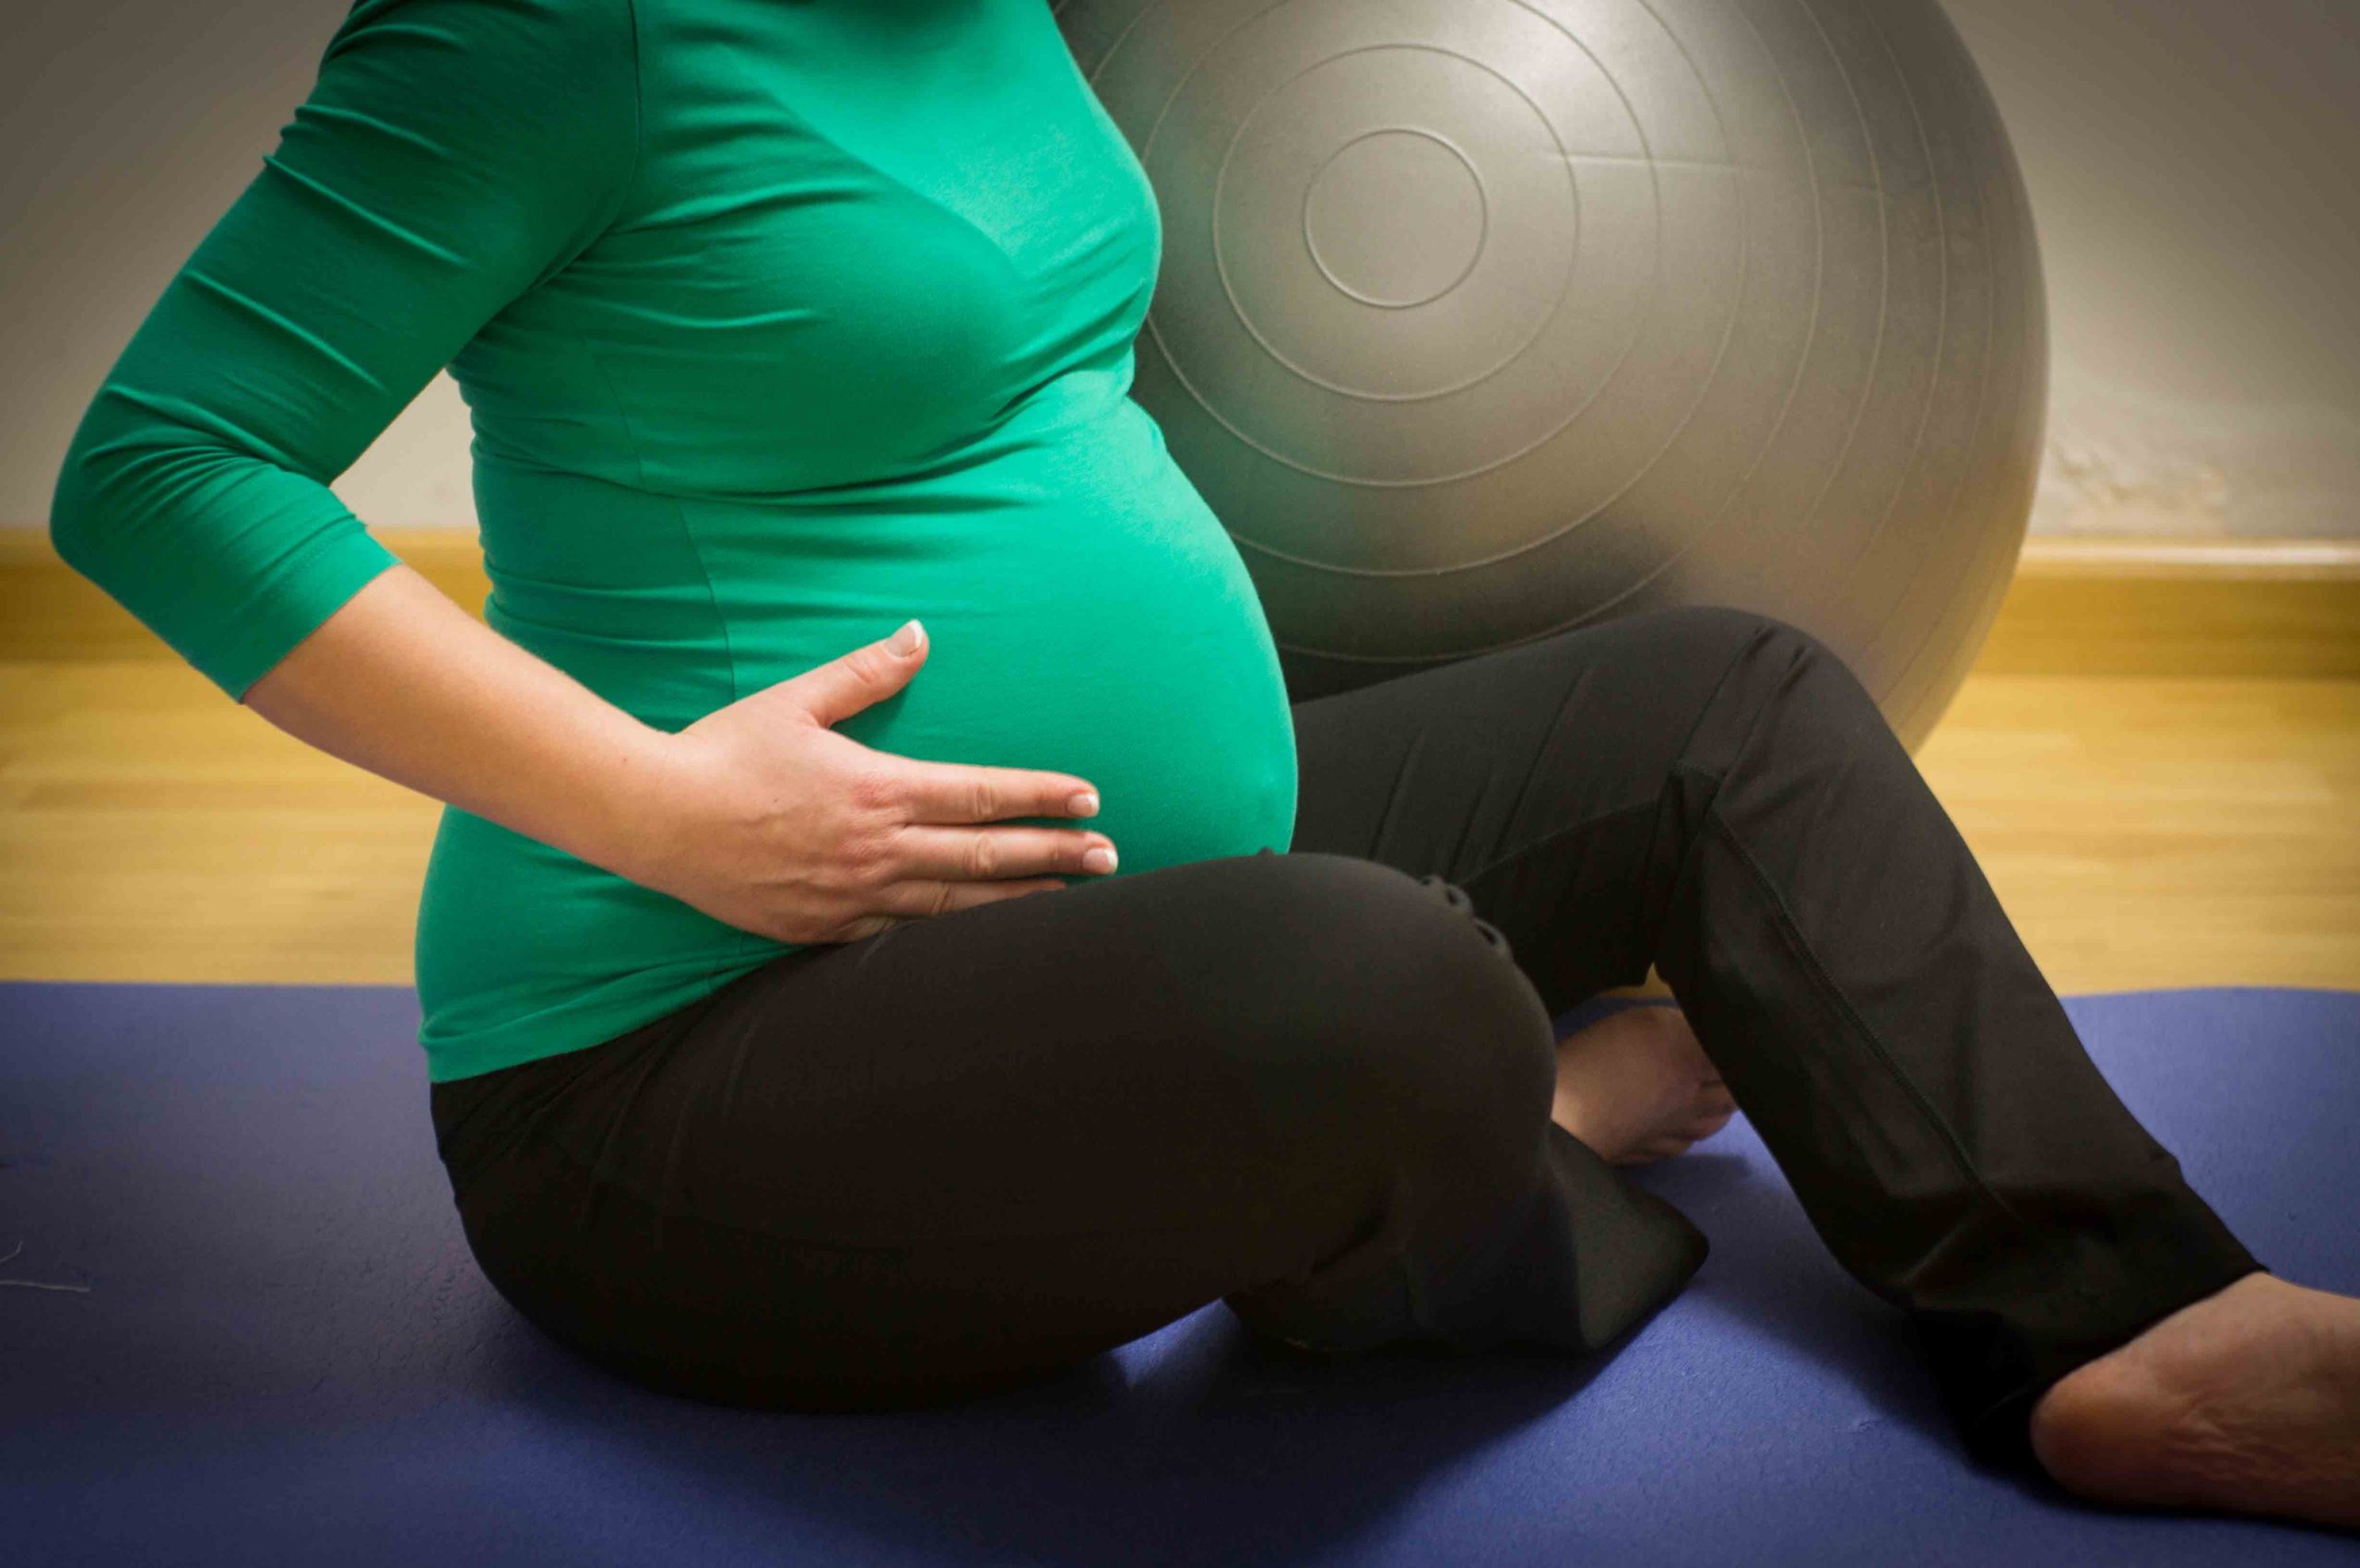 21 неделя беременности тянет. Pregnancy and крытые. Беременные с силовыми нагрузками. Pregnant exercises. Pregnant exercise.